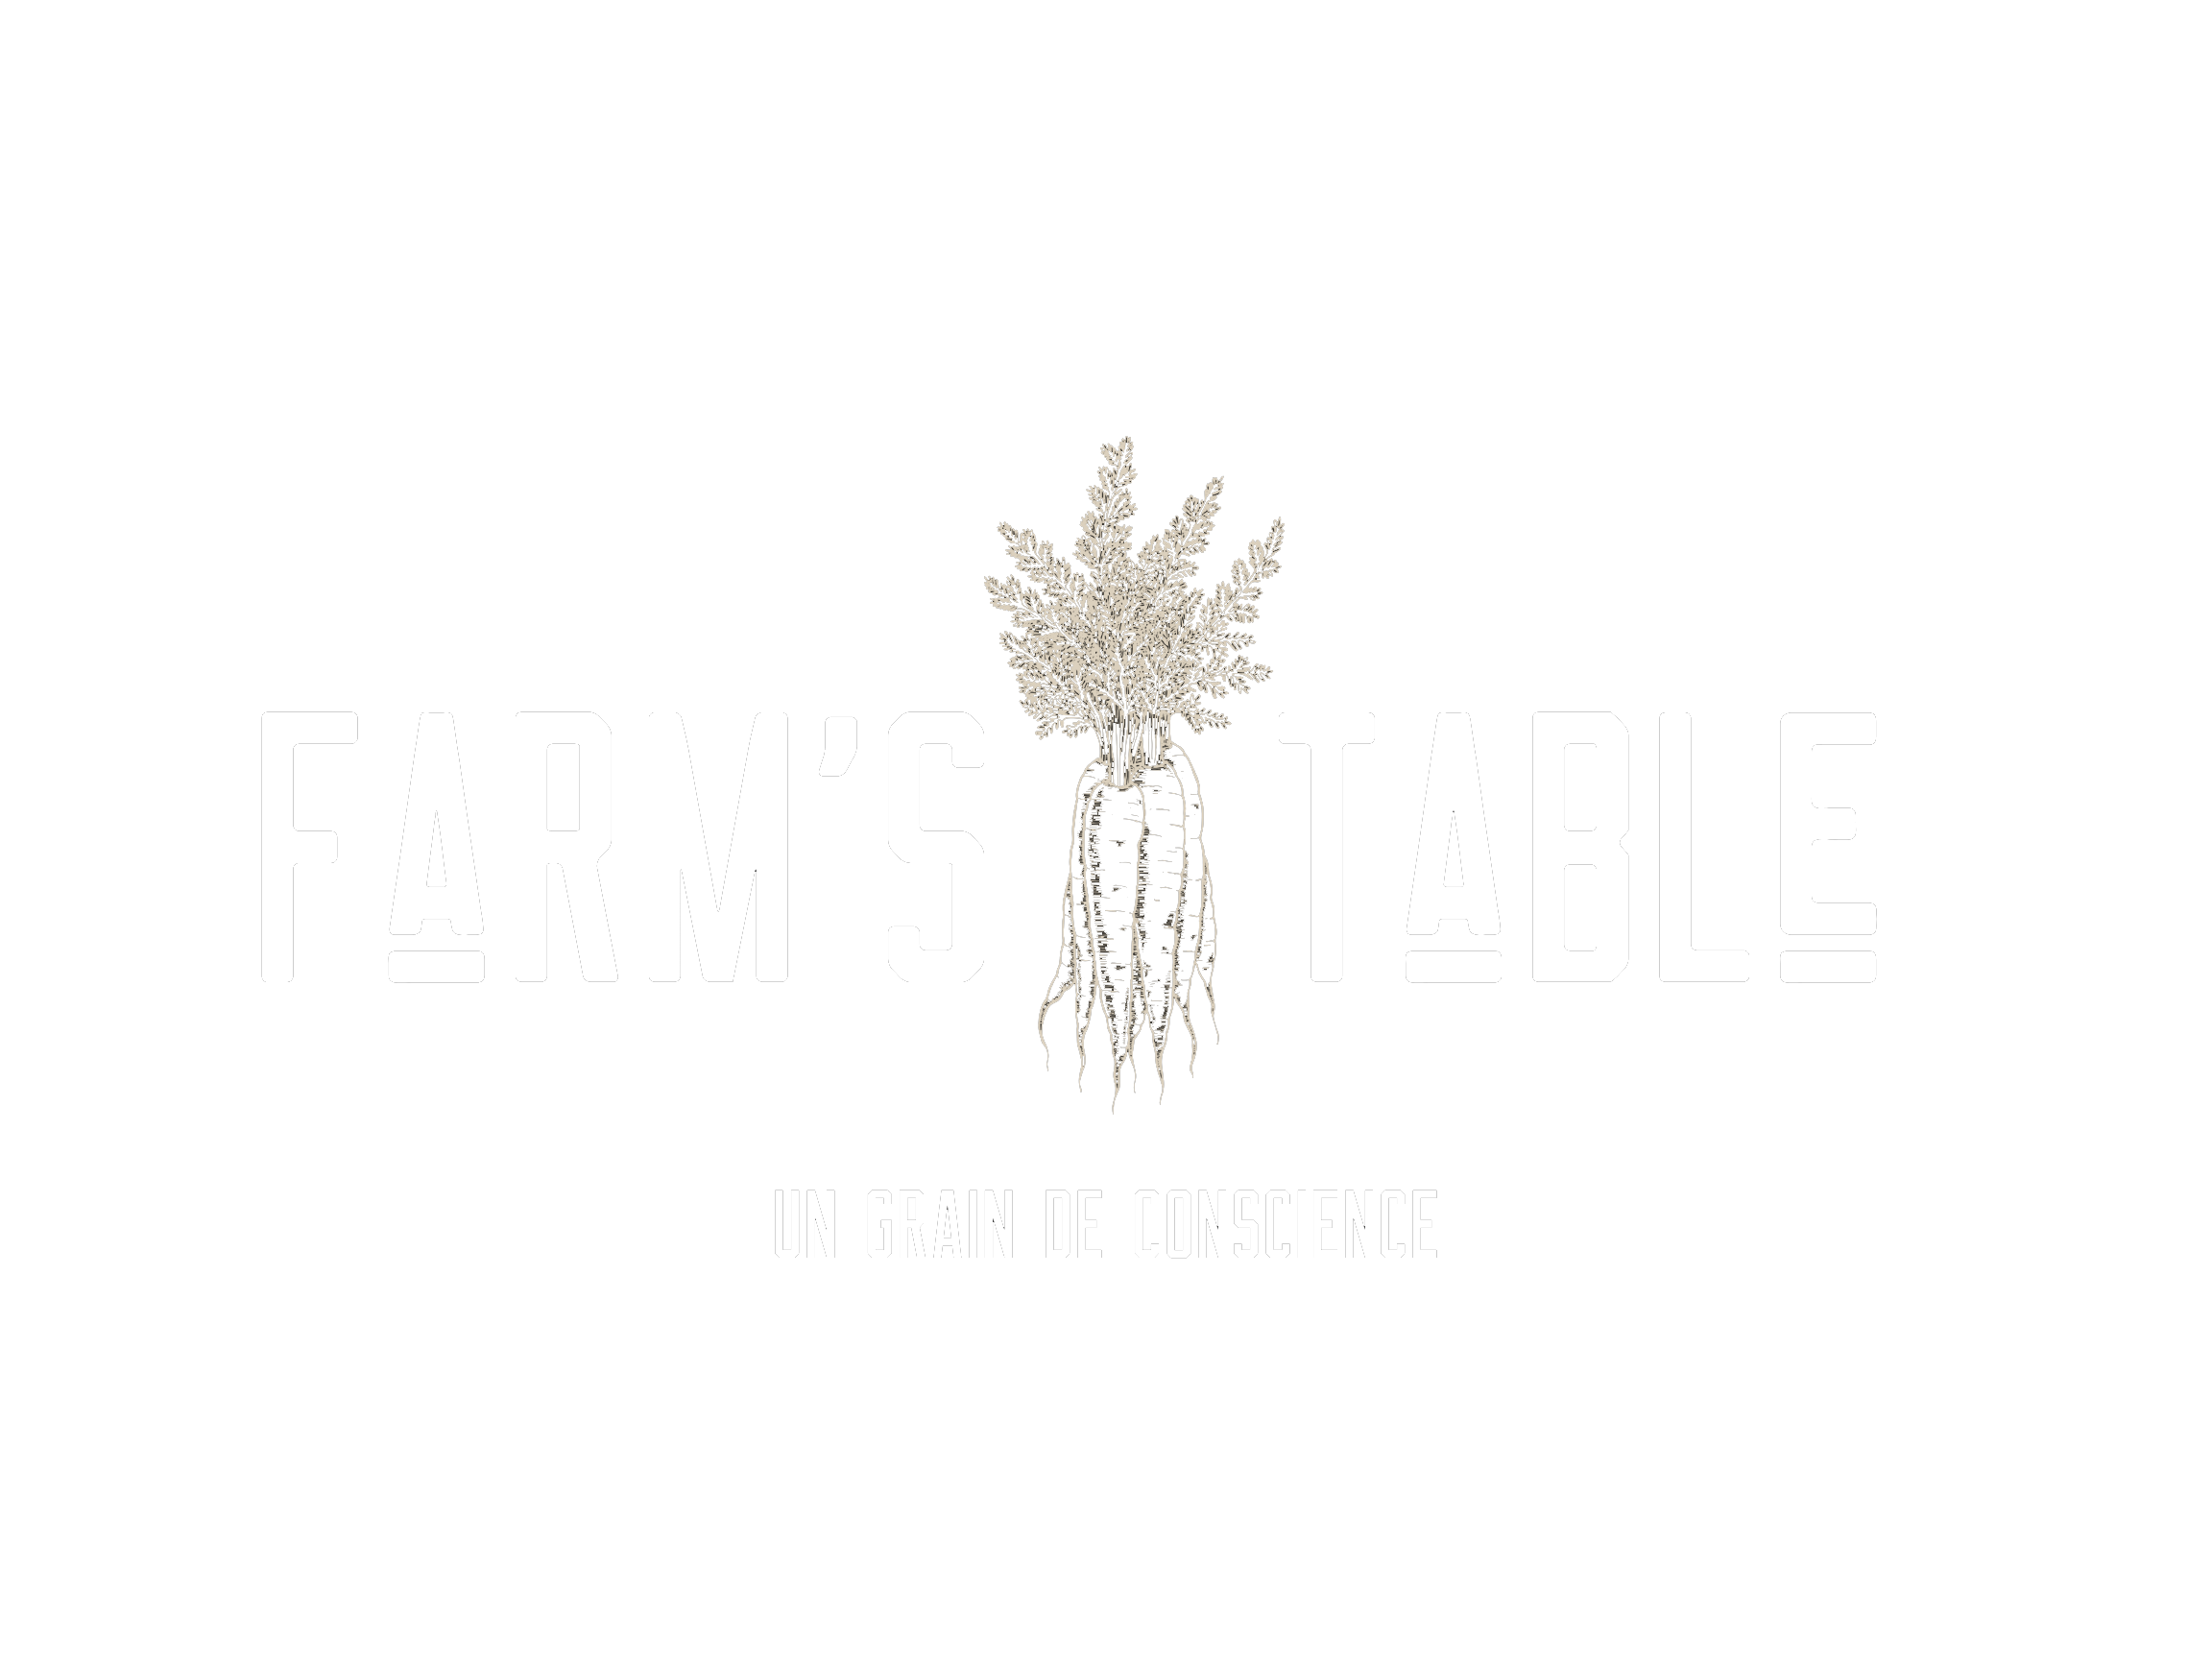 Farm's table